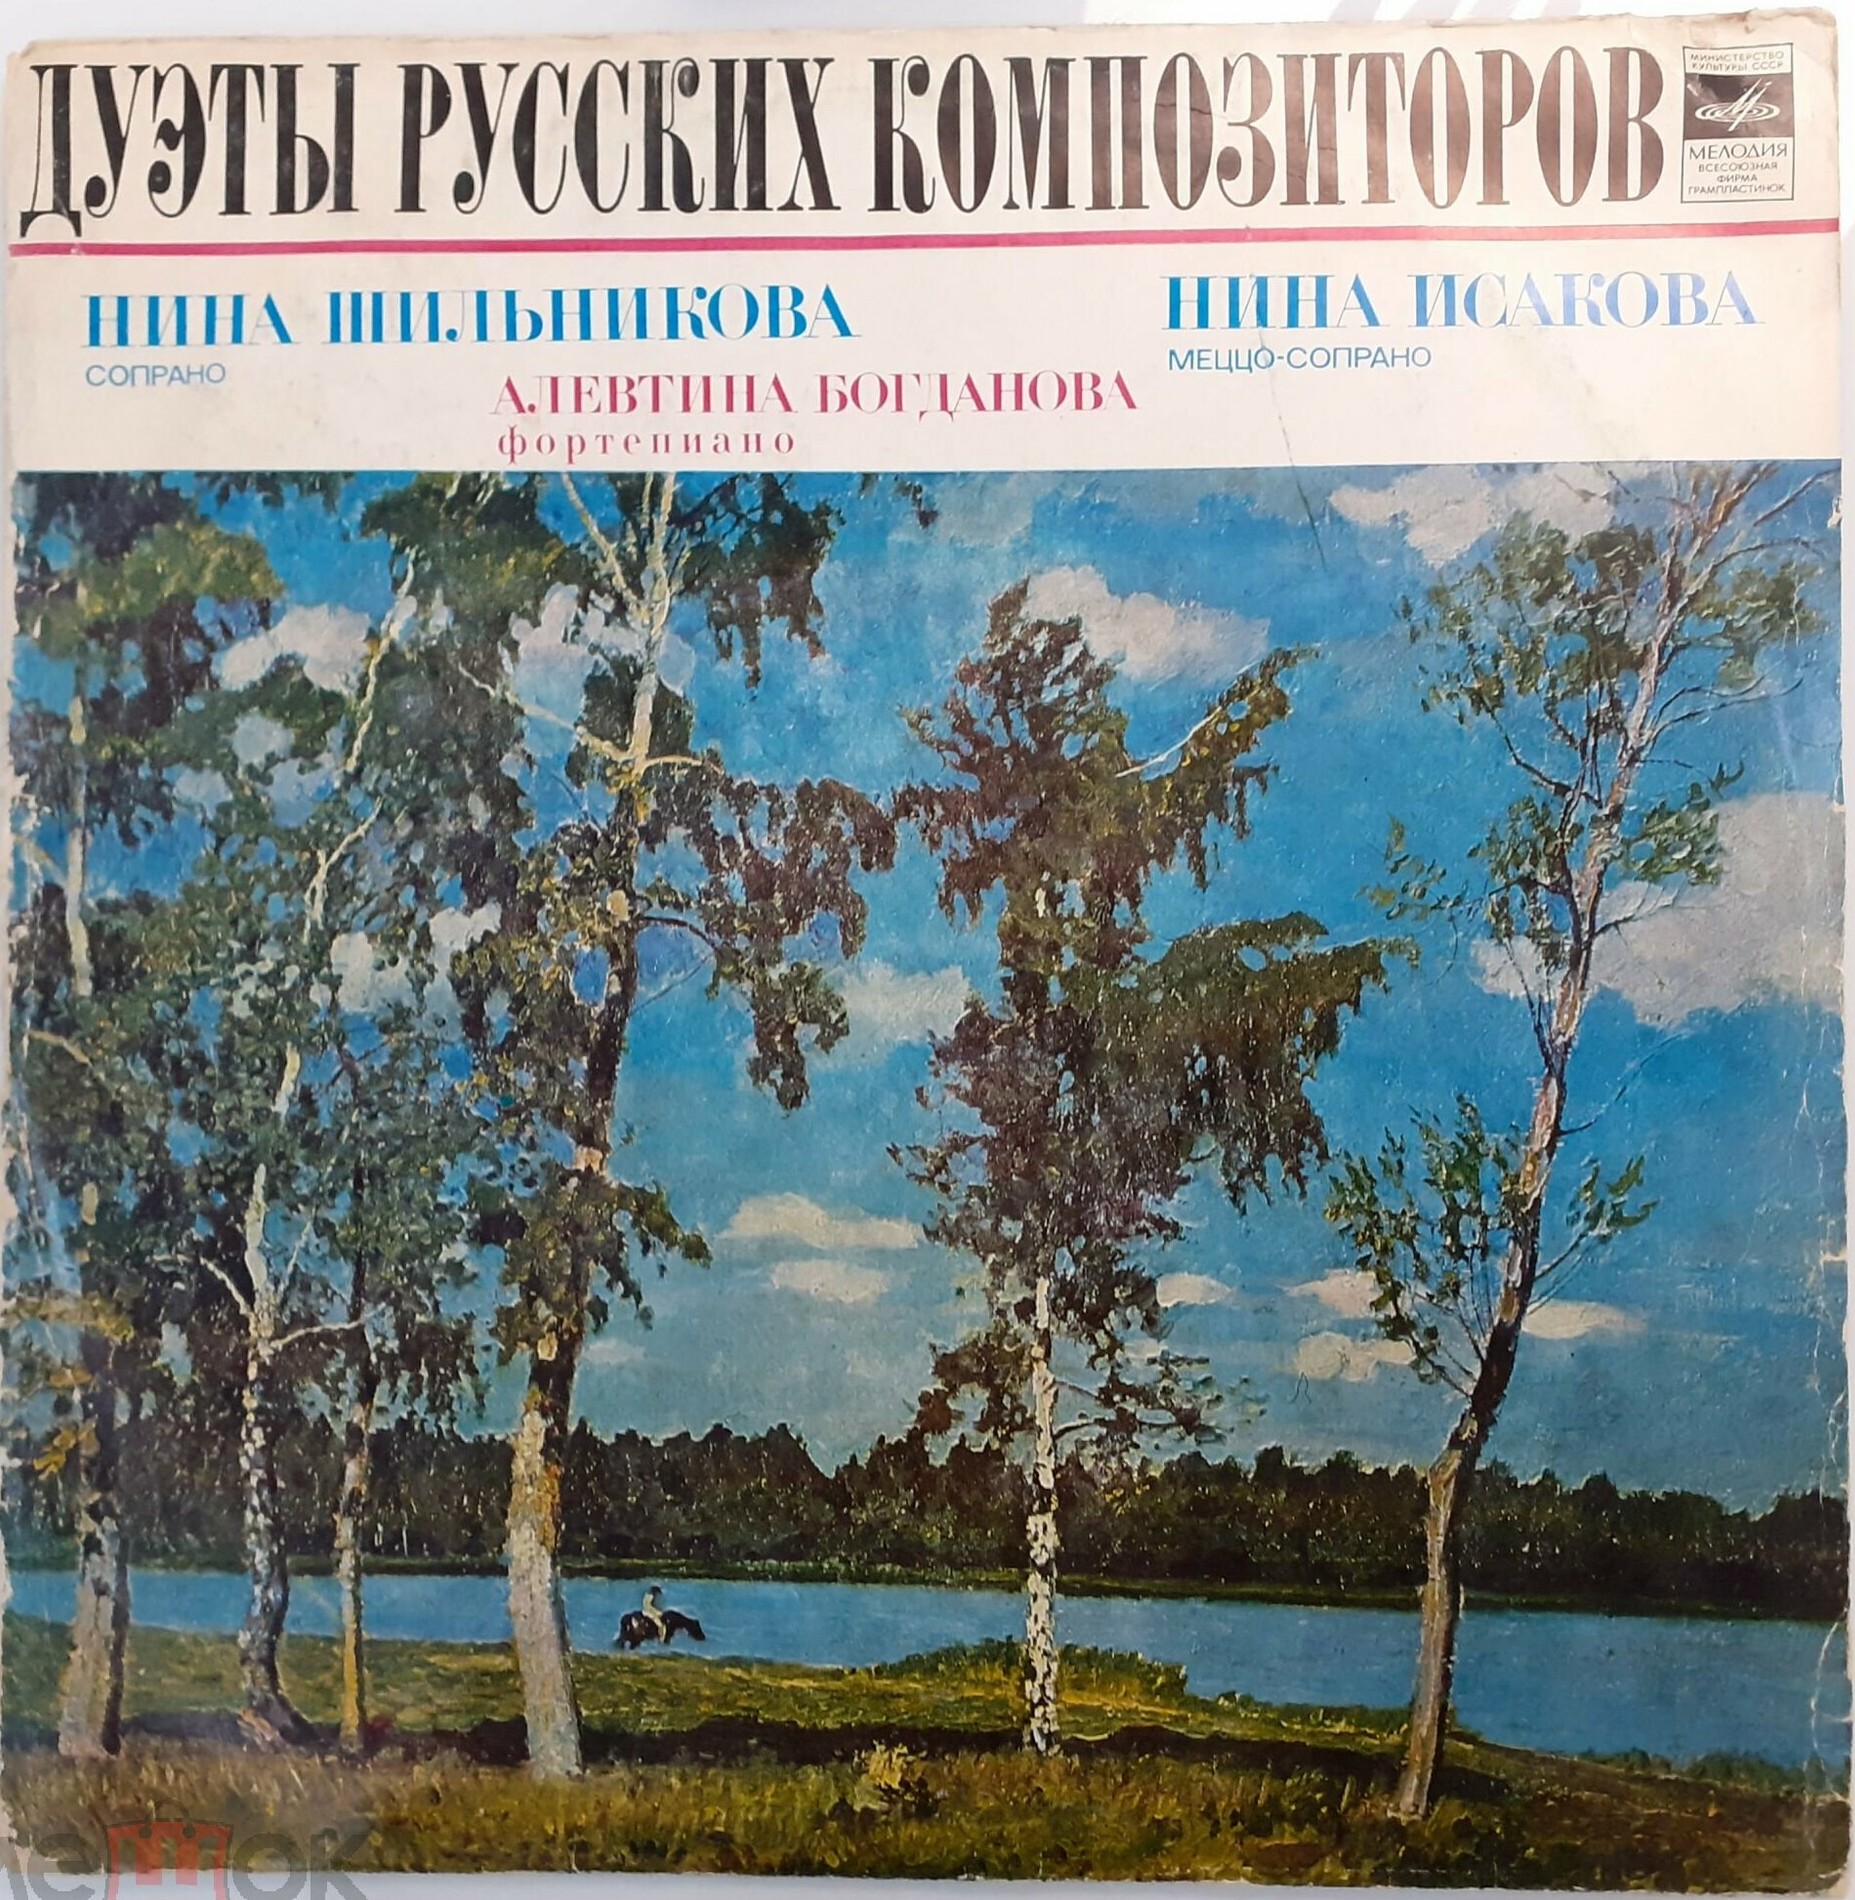 Нина ШИЛЬНИКОВА (сопрано), Нина ИСАКОВА (меццо-сопрано). Дуэты русских композиторов